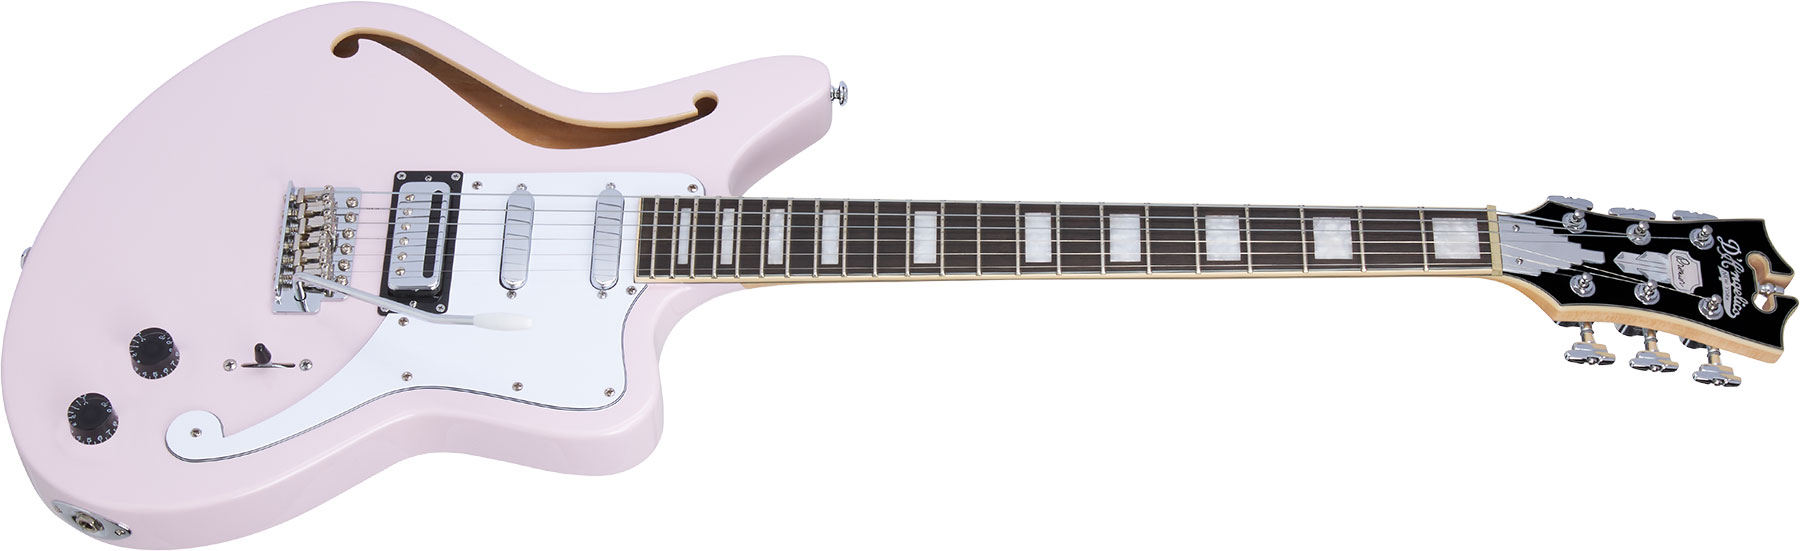 D'angelico Bedford Sh Premier Hss Trem Ova - Shell Pink - Guitare Électrique 1/2 Caisse - Variation 1